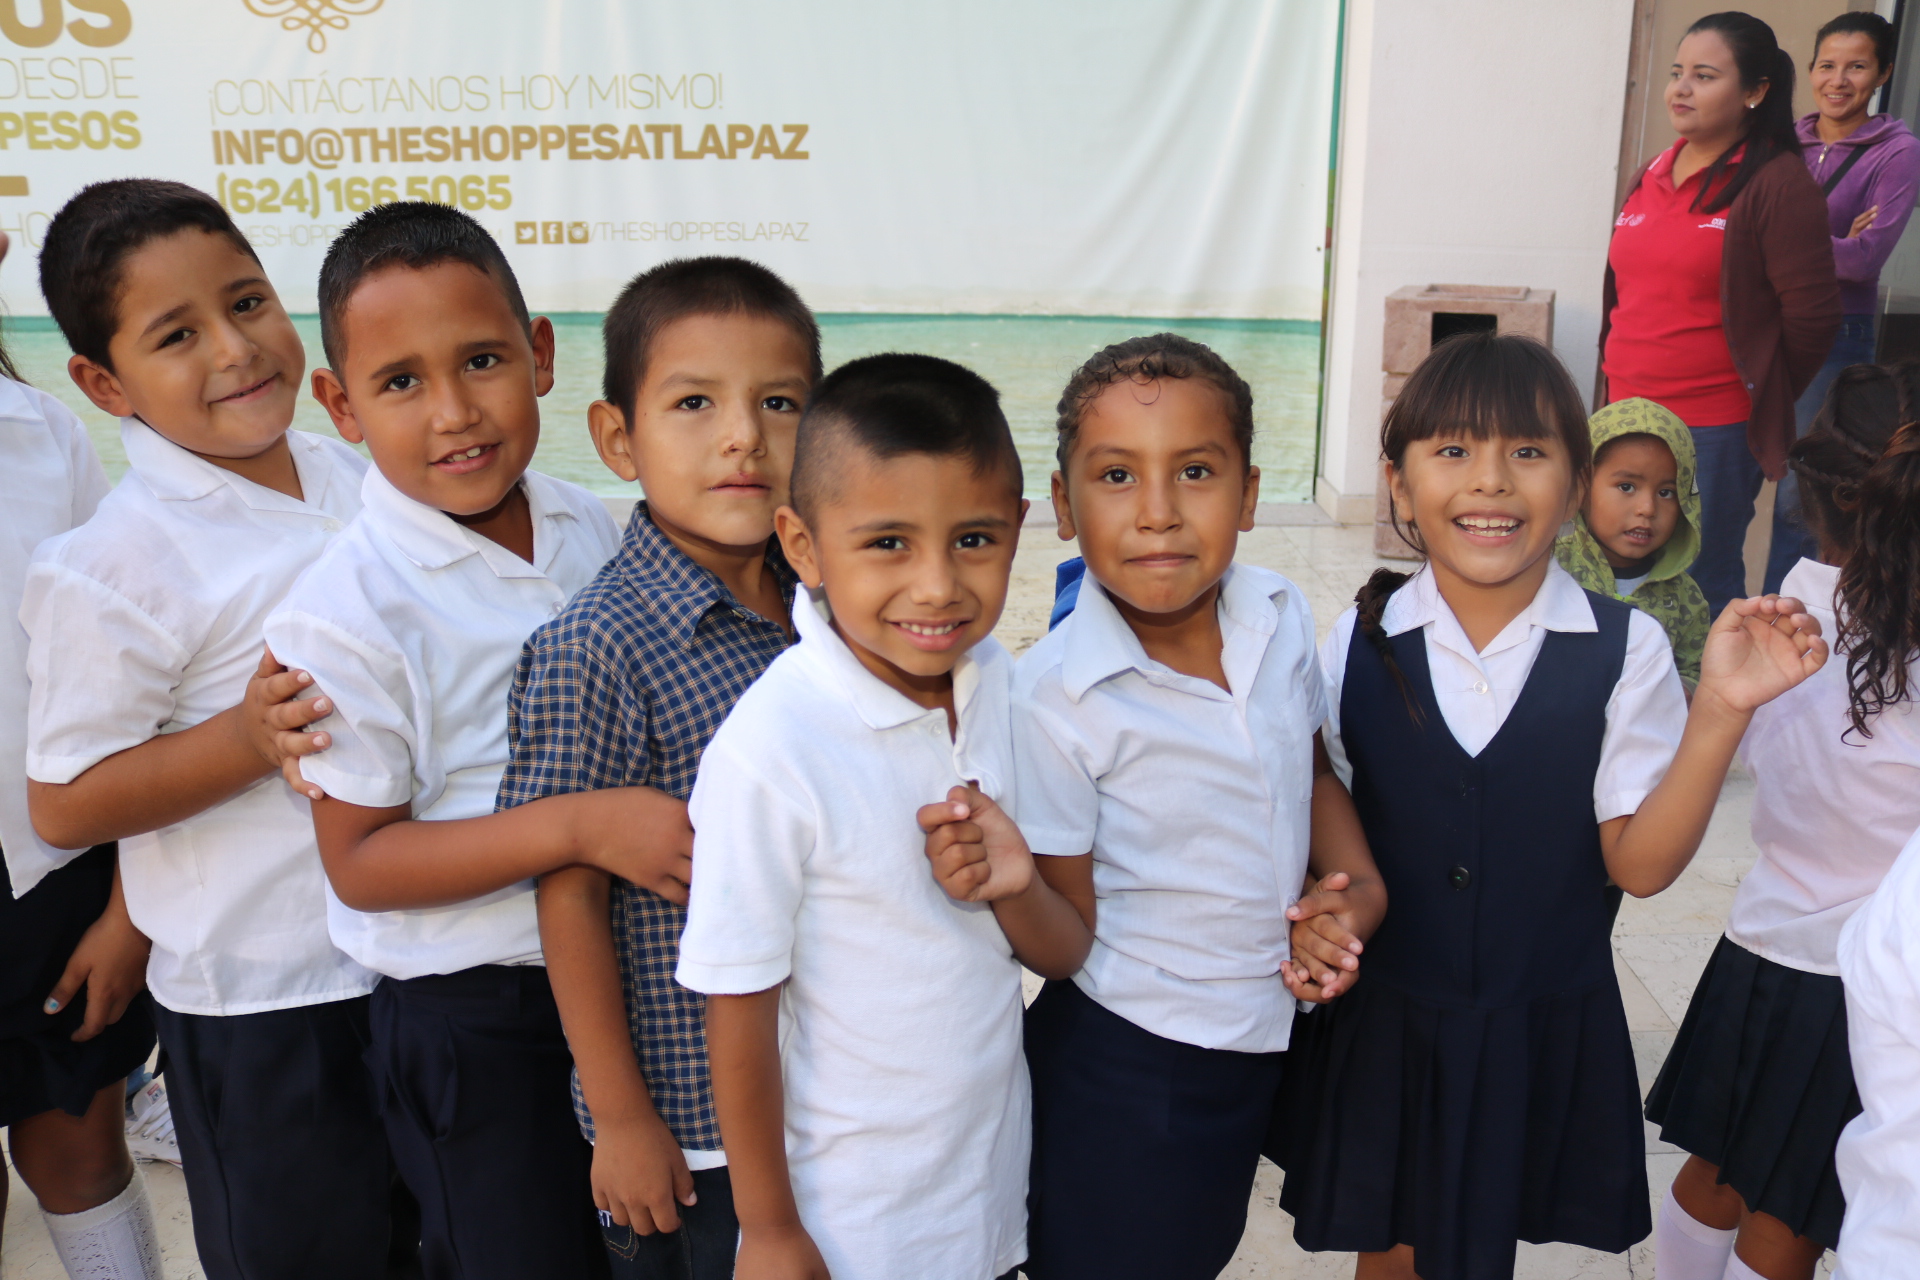 Cinépolis dono 500 entradas a niños de diferentes escuelas de Educación Básica, Centros de Atención Múltiple (CAM) y de campos agrícolas de La Paz